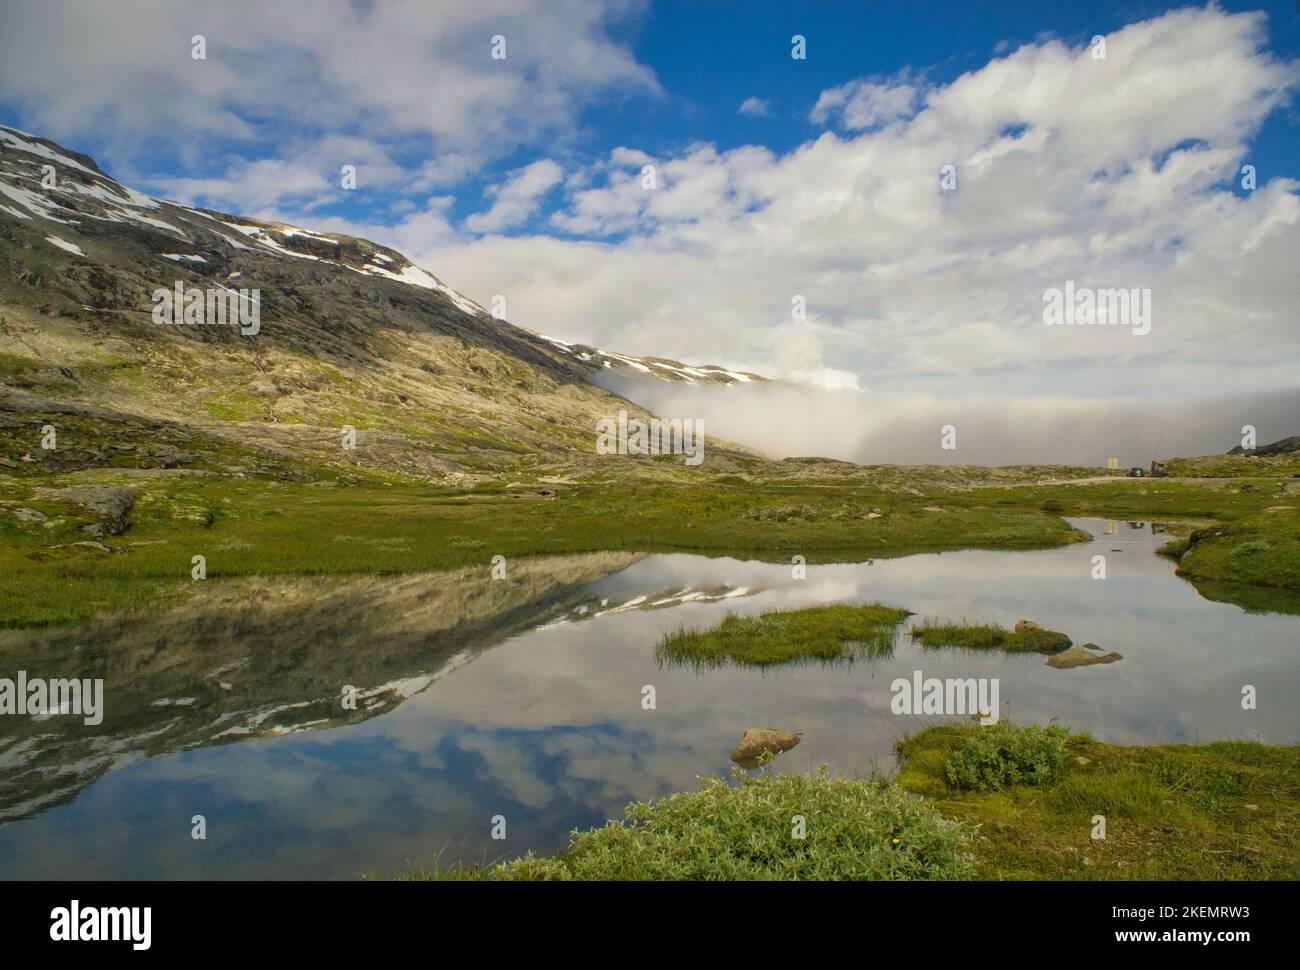 Lake in the mountains near the Norwegian village Geiranger Stock Photo